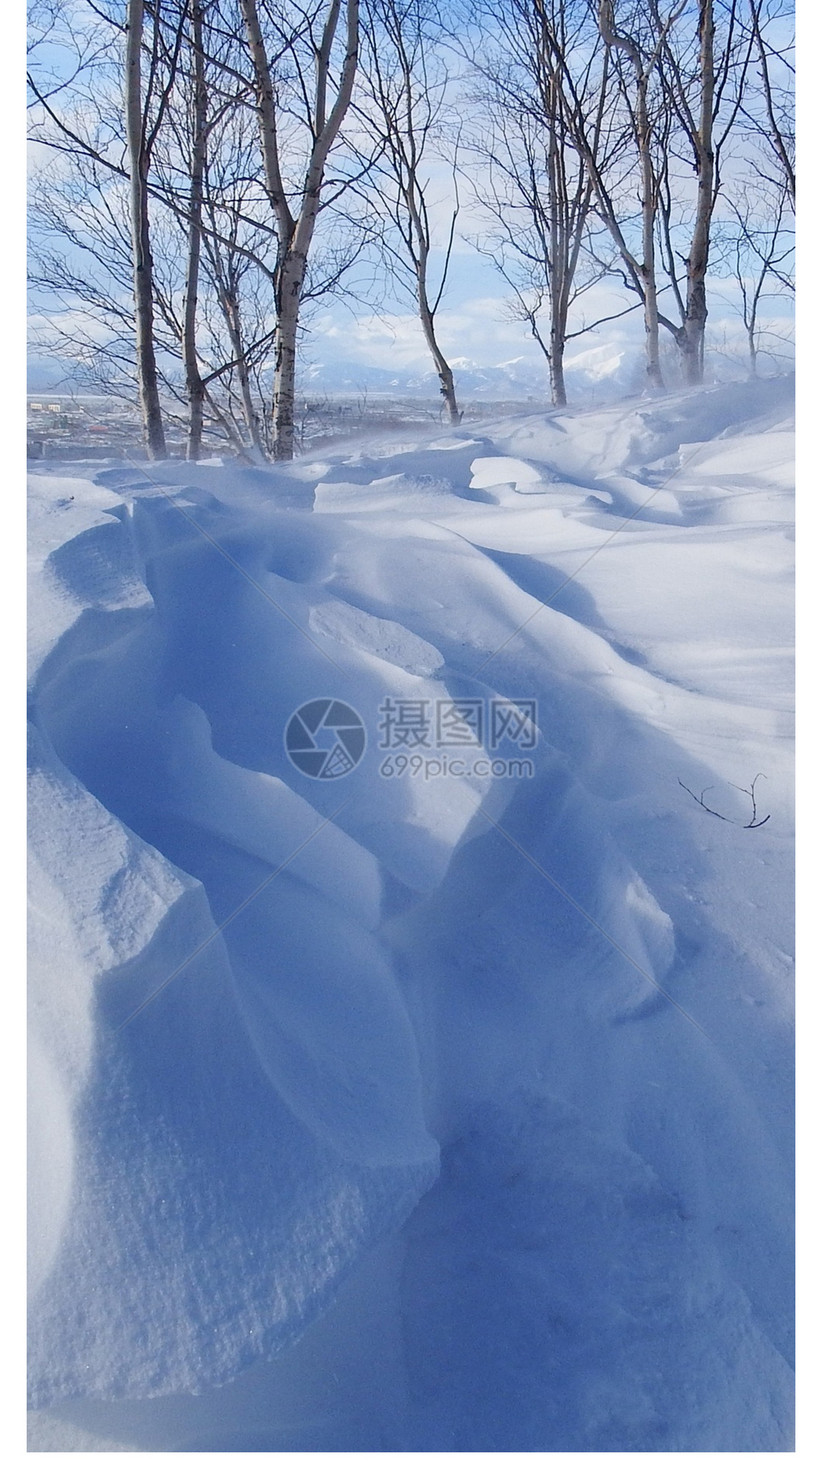 雪景手机壁纸模板素材 正版图片 摄图网